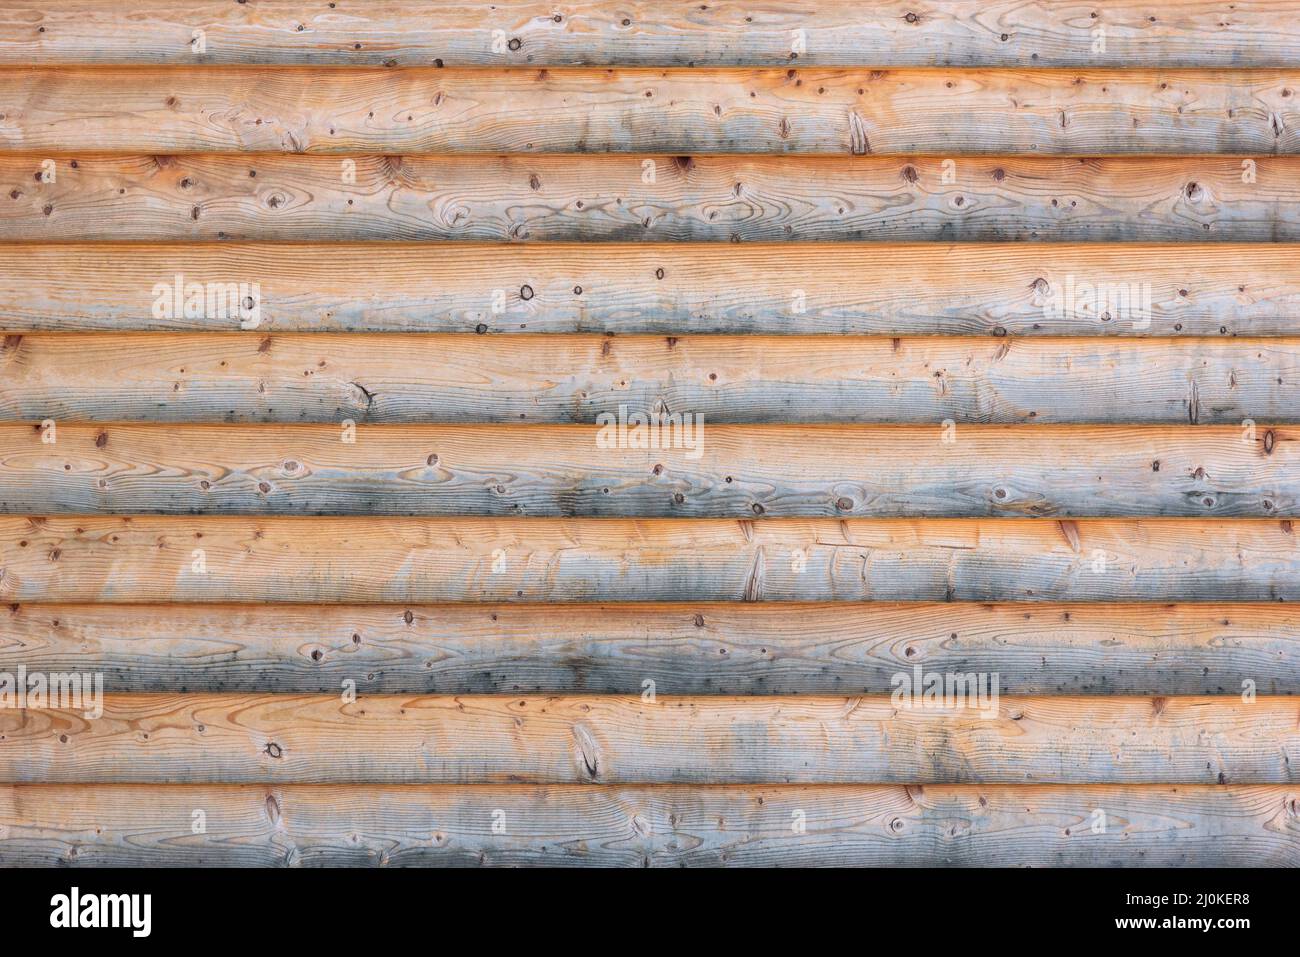 Fondo de madera erosionado hecho de tablones planos dispuestos horizontalmente Foto de stock